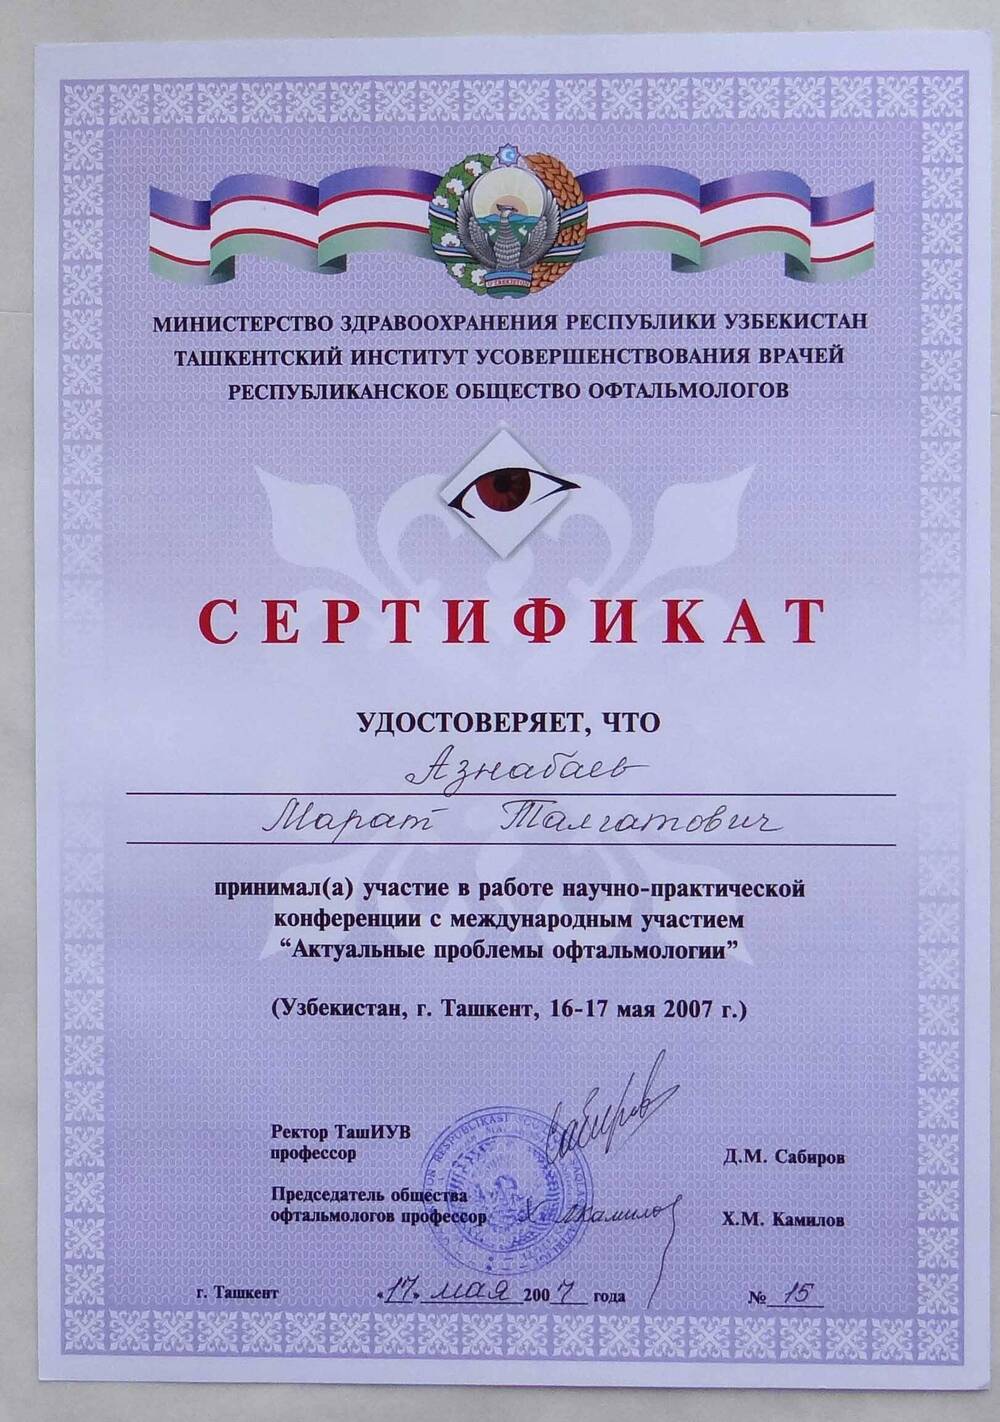 Сертификат, удостоверяющий участие Азнабаева М.Т. в работе н.-практической конференции с международным участием Актуальные проблемы офтальмологии. Узбекистан, г.Ташкент, 16-17 мая 2007г.